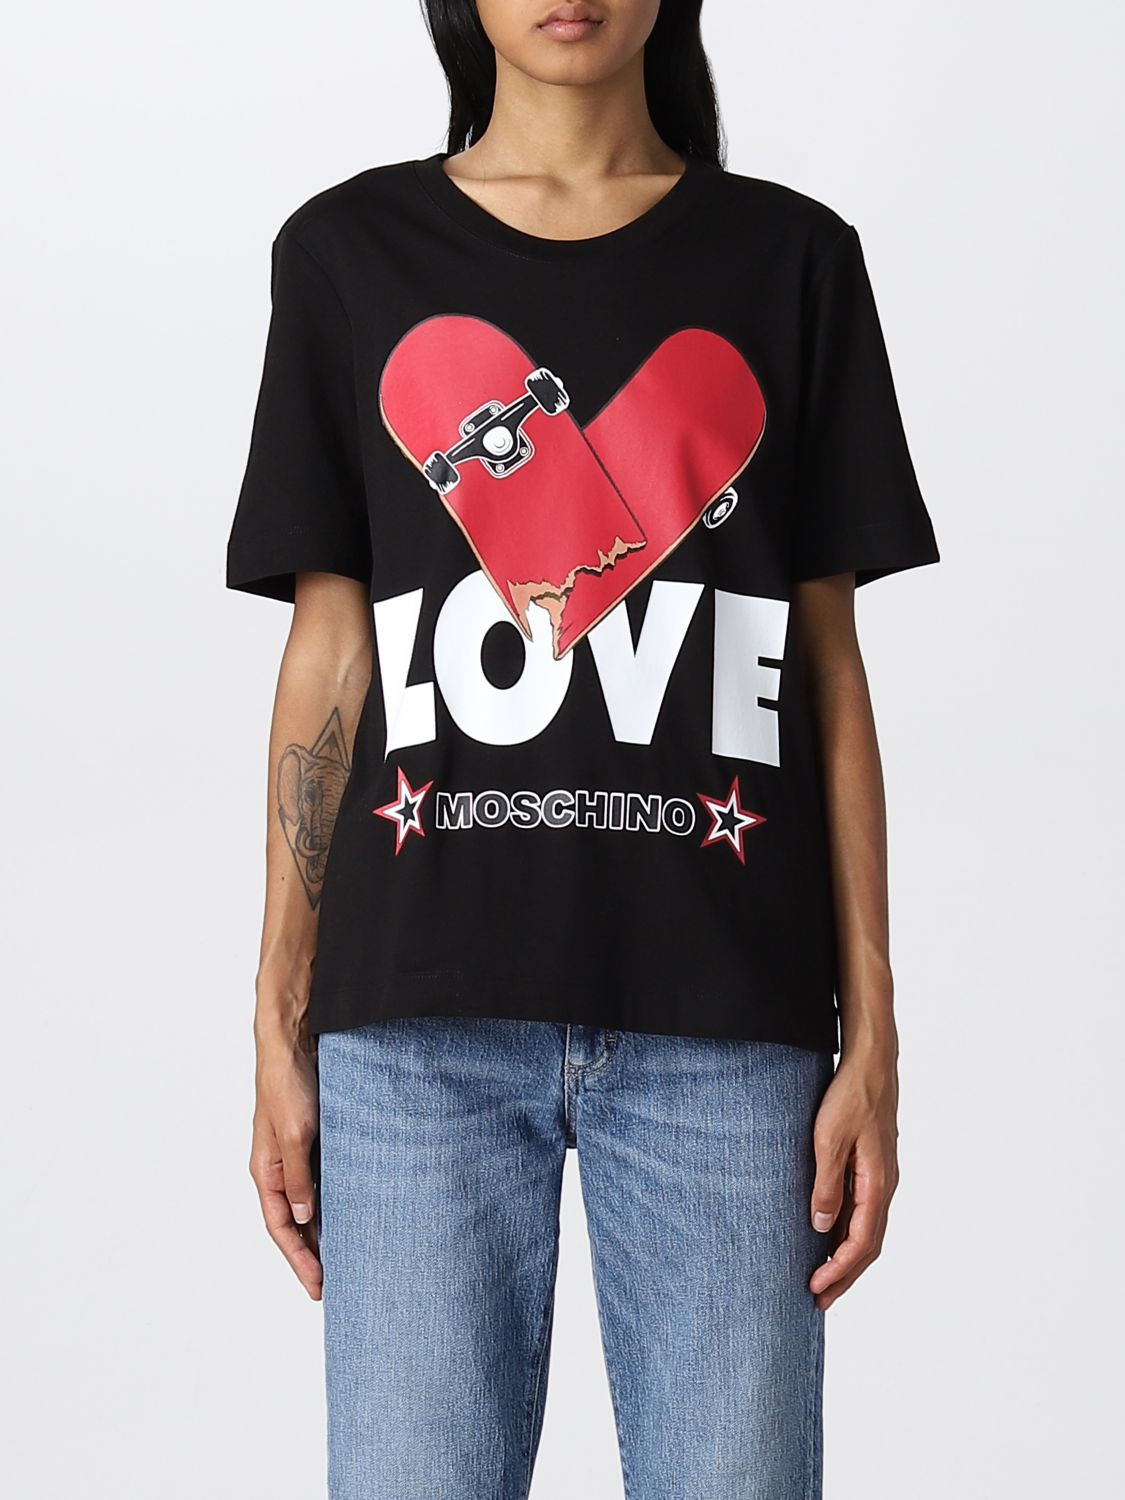 LOVE MOSCHINO: T-shirt women - Black | T-Shirt Love Moschino ...